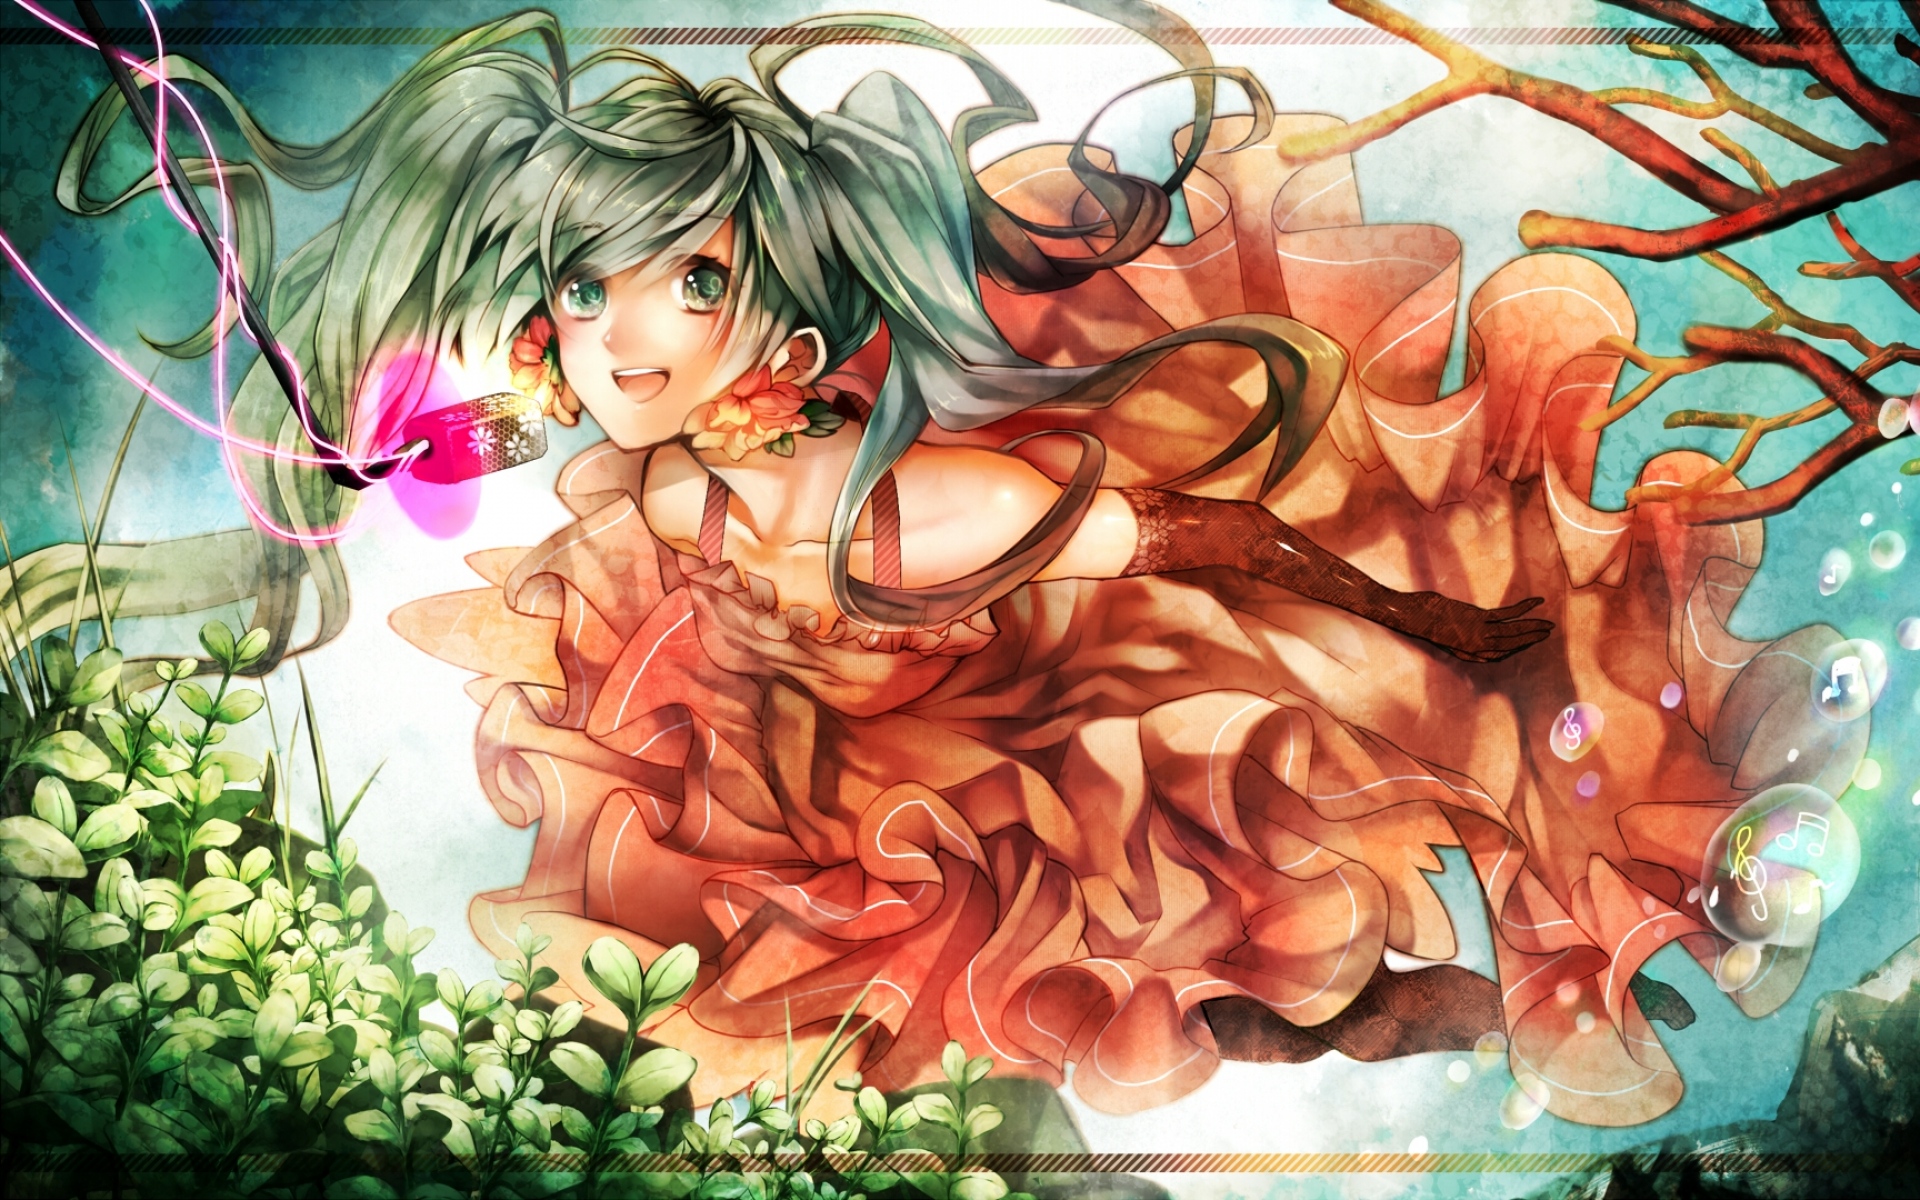 Картинки Hatsune miku, девушка, зеленые глаза, два хвоста, платье, цветы, перчатки, растение фото и обои на рабочий стол